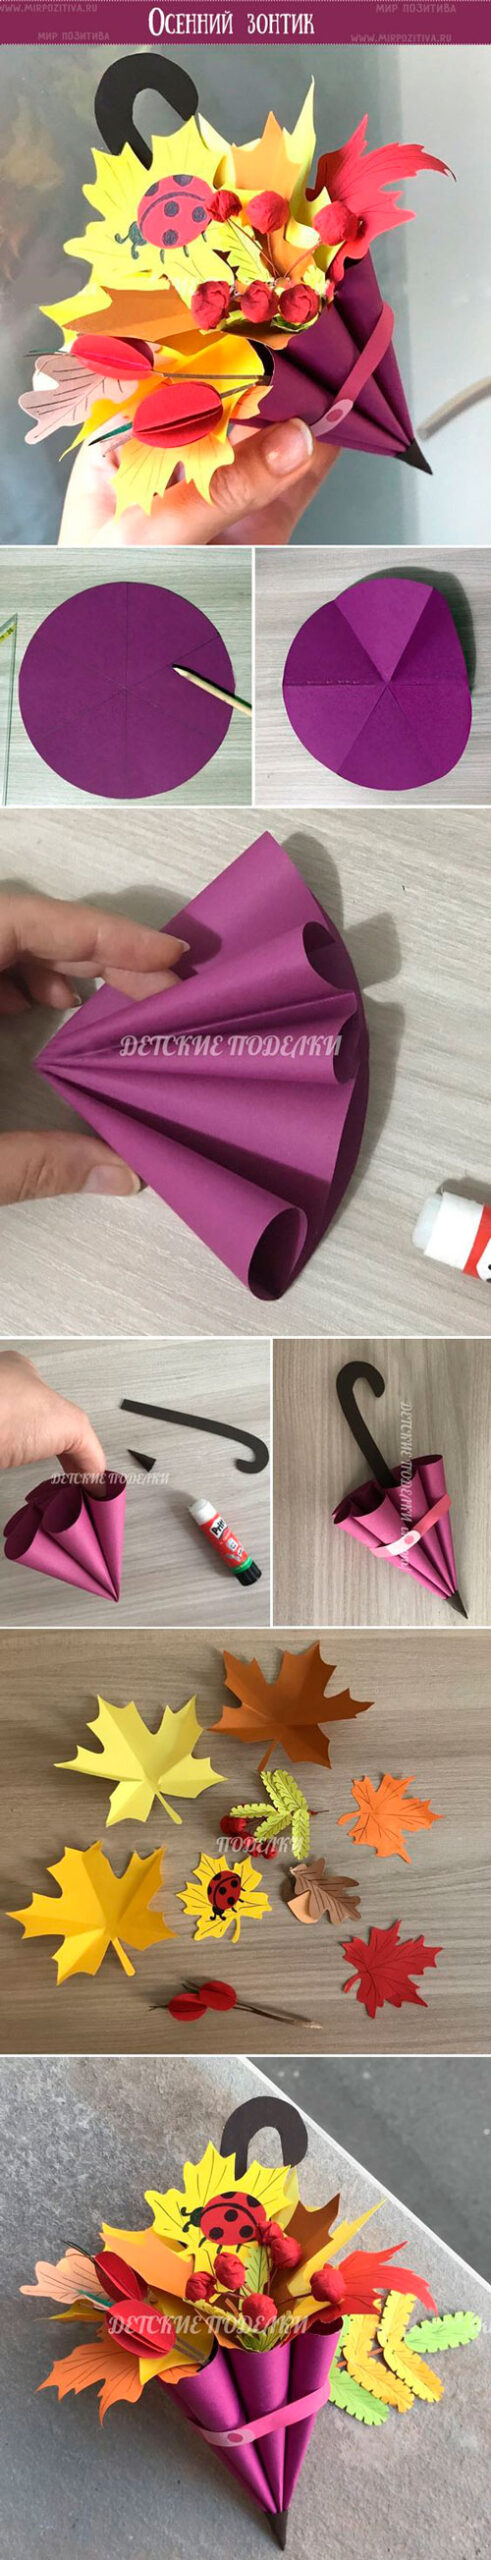 осенняя поделка зонтик из природных материалов своими руками 7